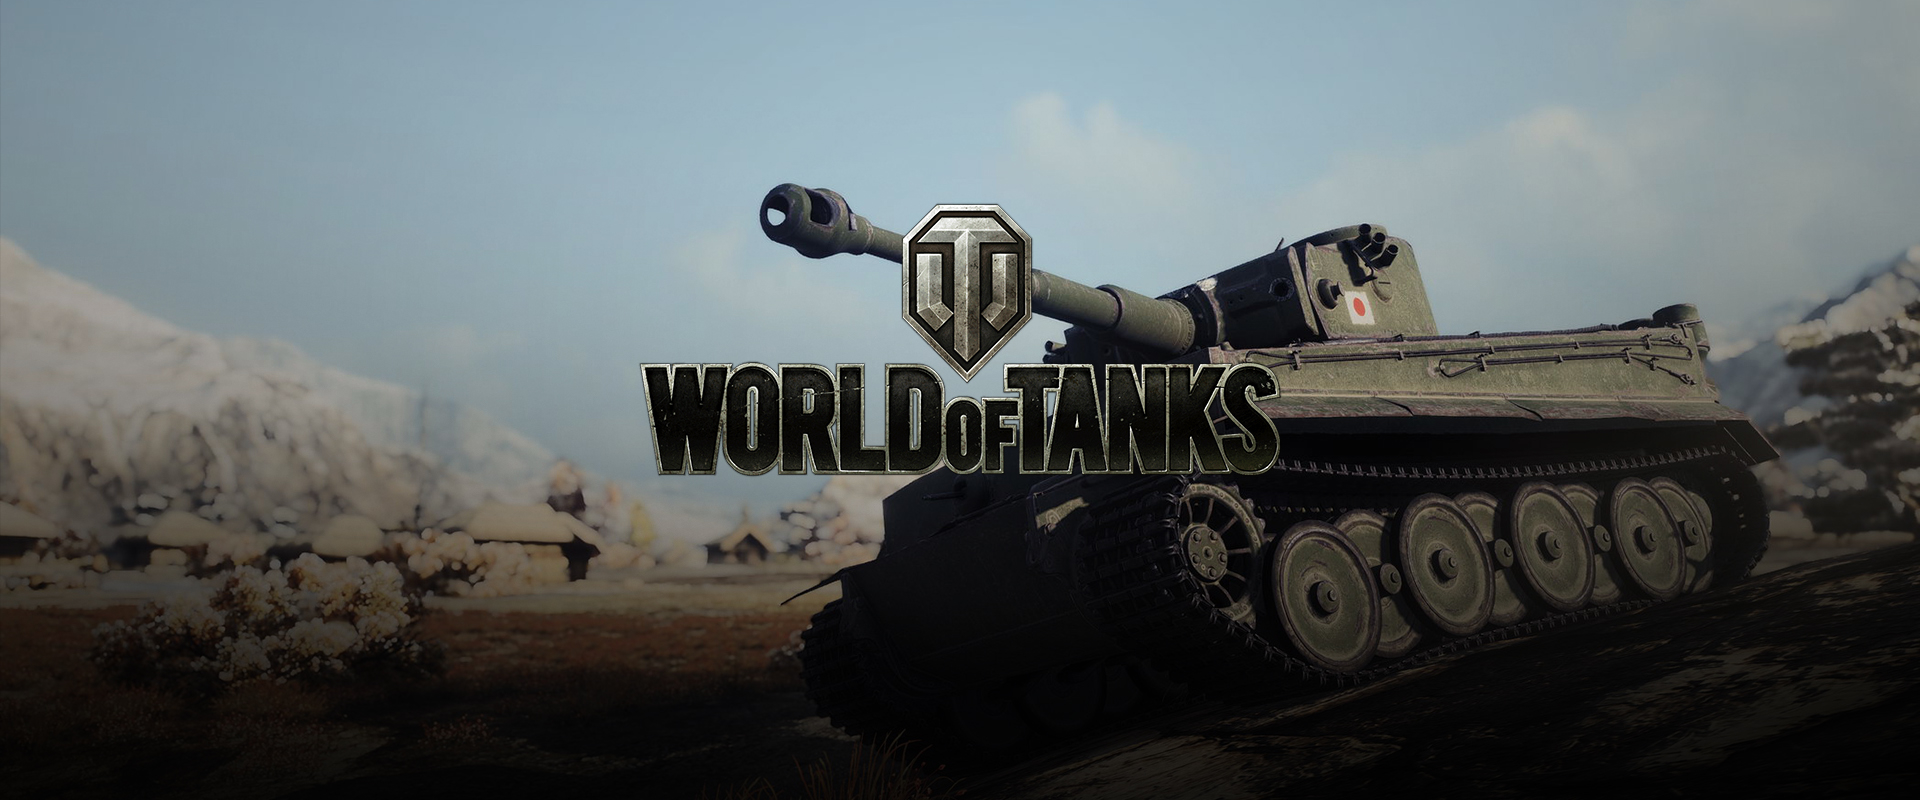 XP kihívás: Szerezd meg ingyen a Heavy Tank No. VI prémium tankot!